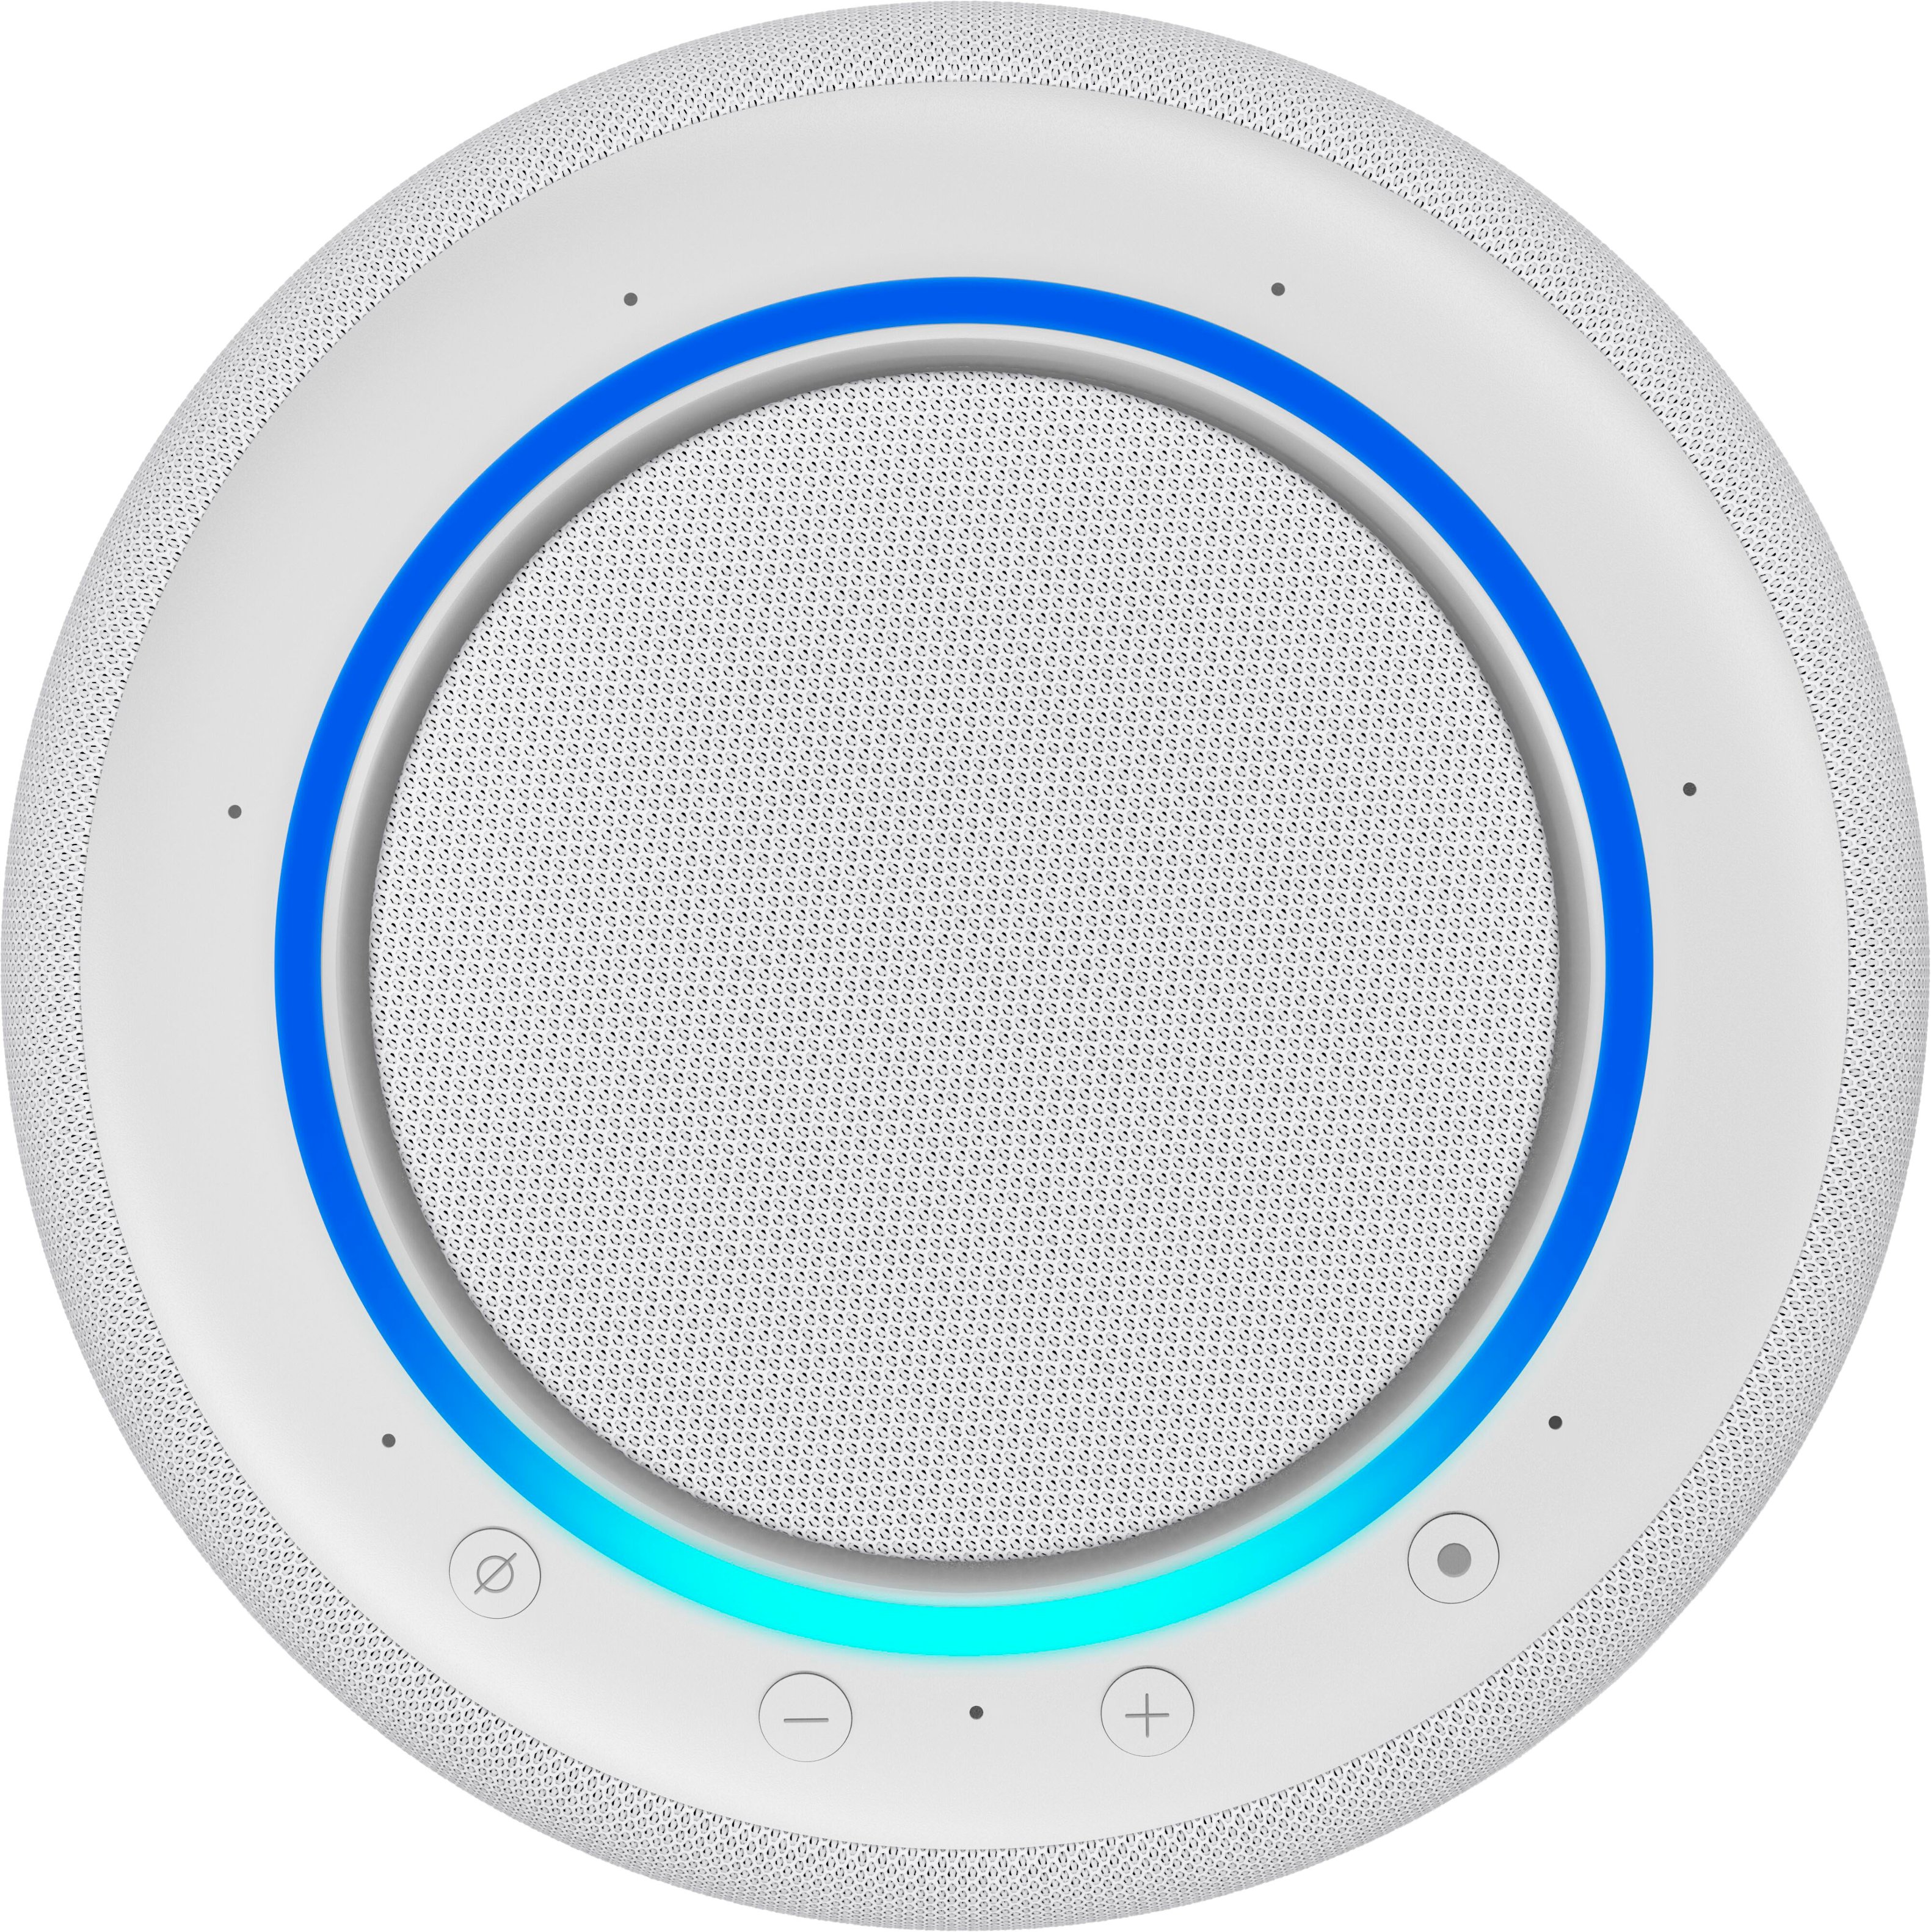 Buy  Echo Studio Smart Speaker with Alexa - Charcoal, Bluetooth  speakers